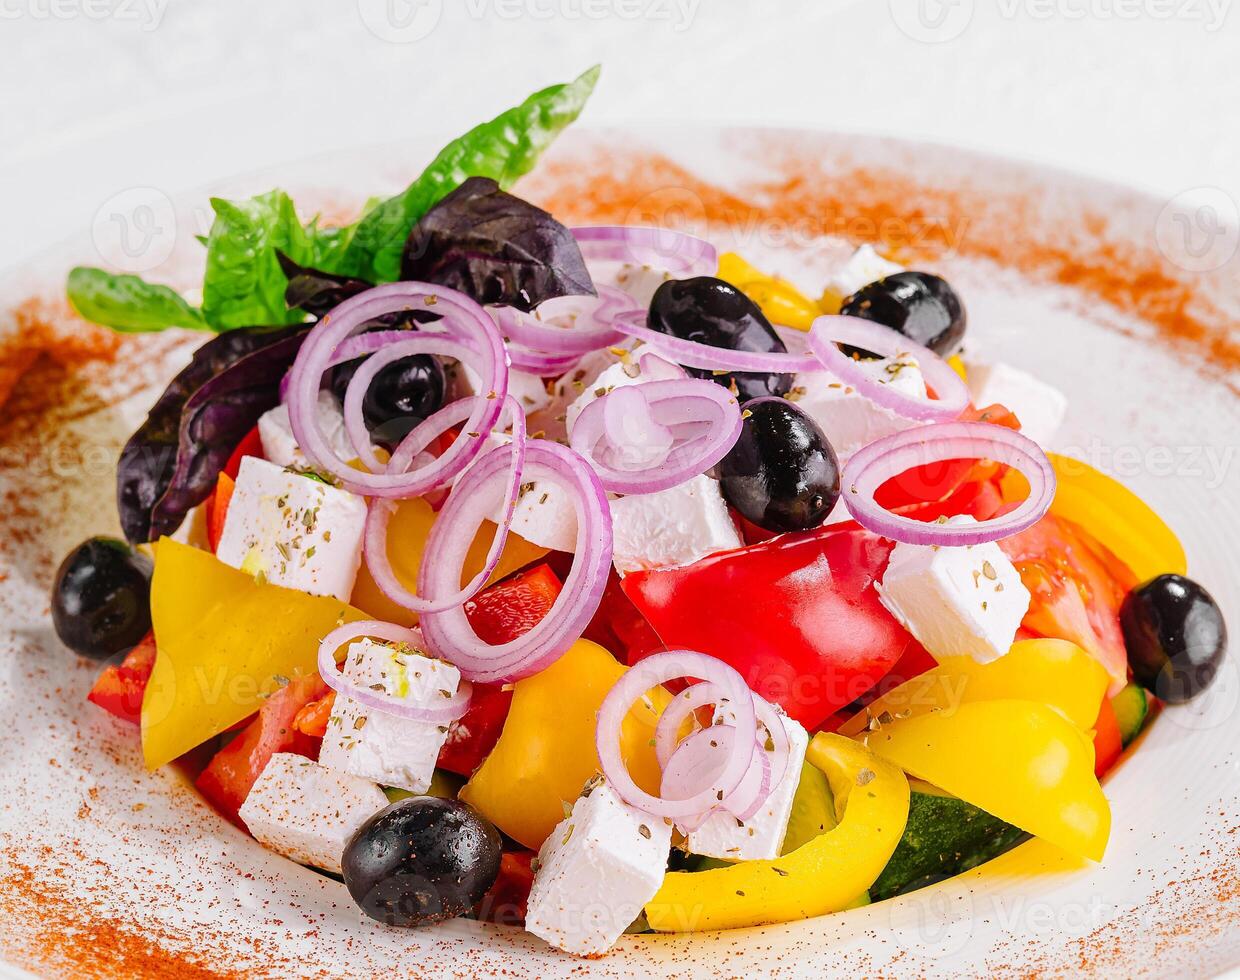 frisch hausgemacht griechisch Salat mit Basilikum Blätter auf ein Teller foto